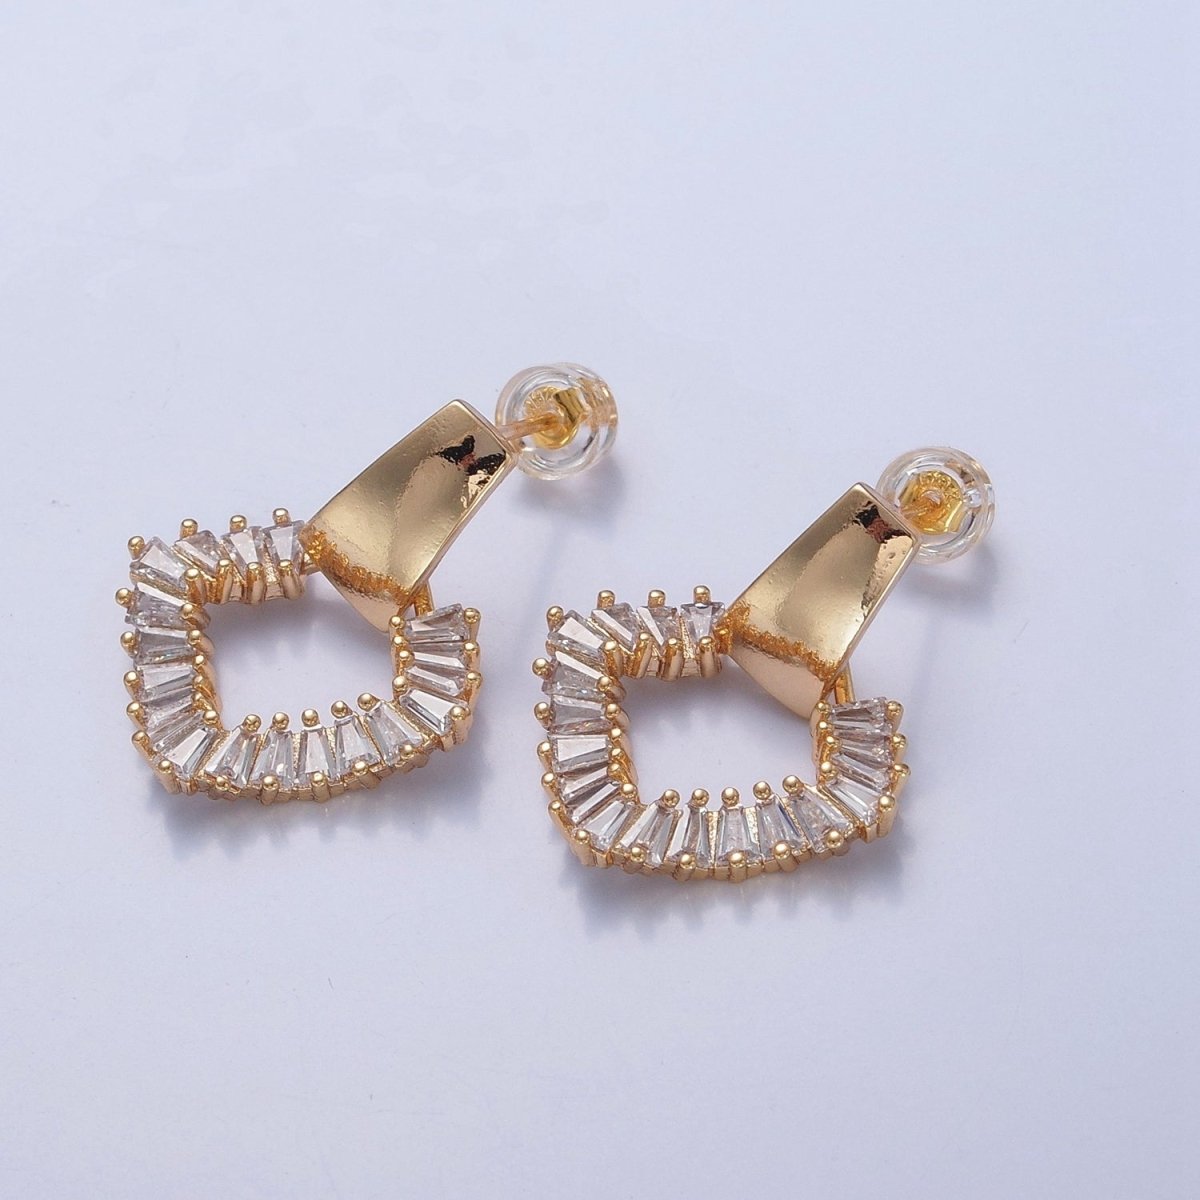 Baguette Earrings, Dainty Gold Earrings, Triangle Earrings, Brass CZ Studs, Geometric Stud Earring V-382 - DLUXCA